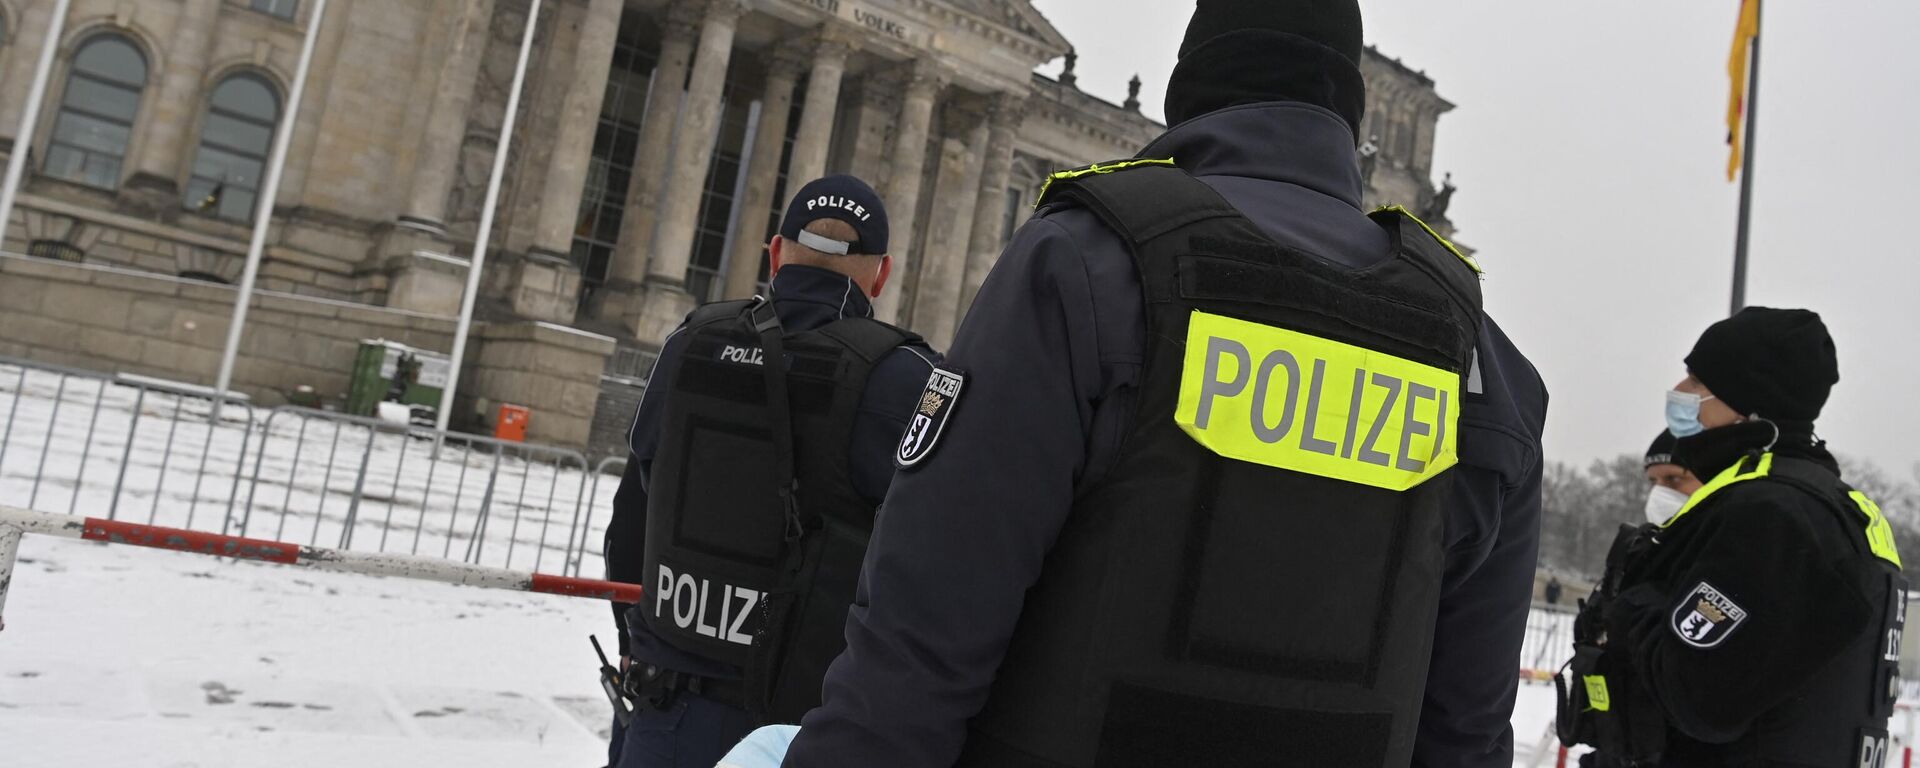 Policiais mantêm guarda em frente ao Reichstag, prédio que sedia o Bundestag (Parlamento alemão), em Berlim, Alemanha, 9 de dezembro de 2021 - Sputnik Brasil, 1920, 10.05.2022